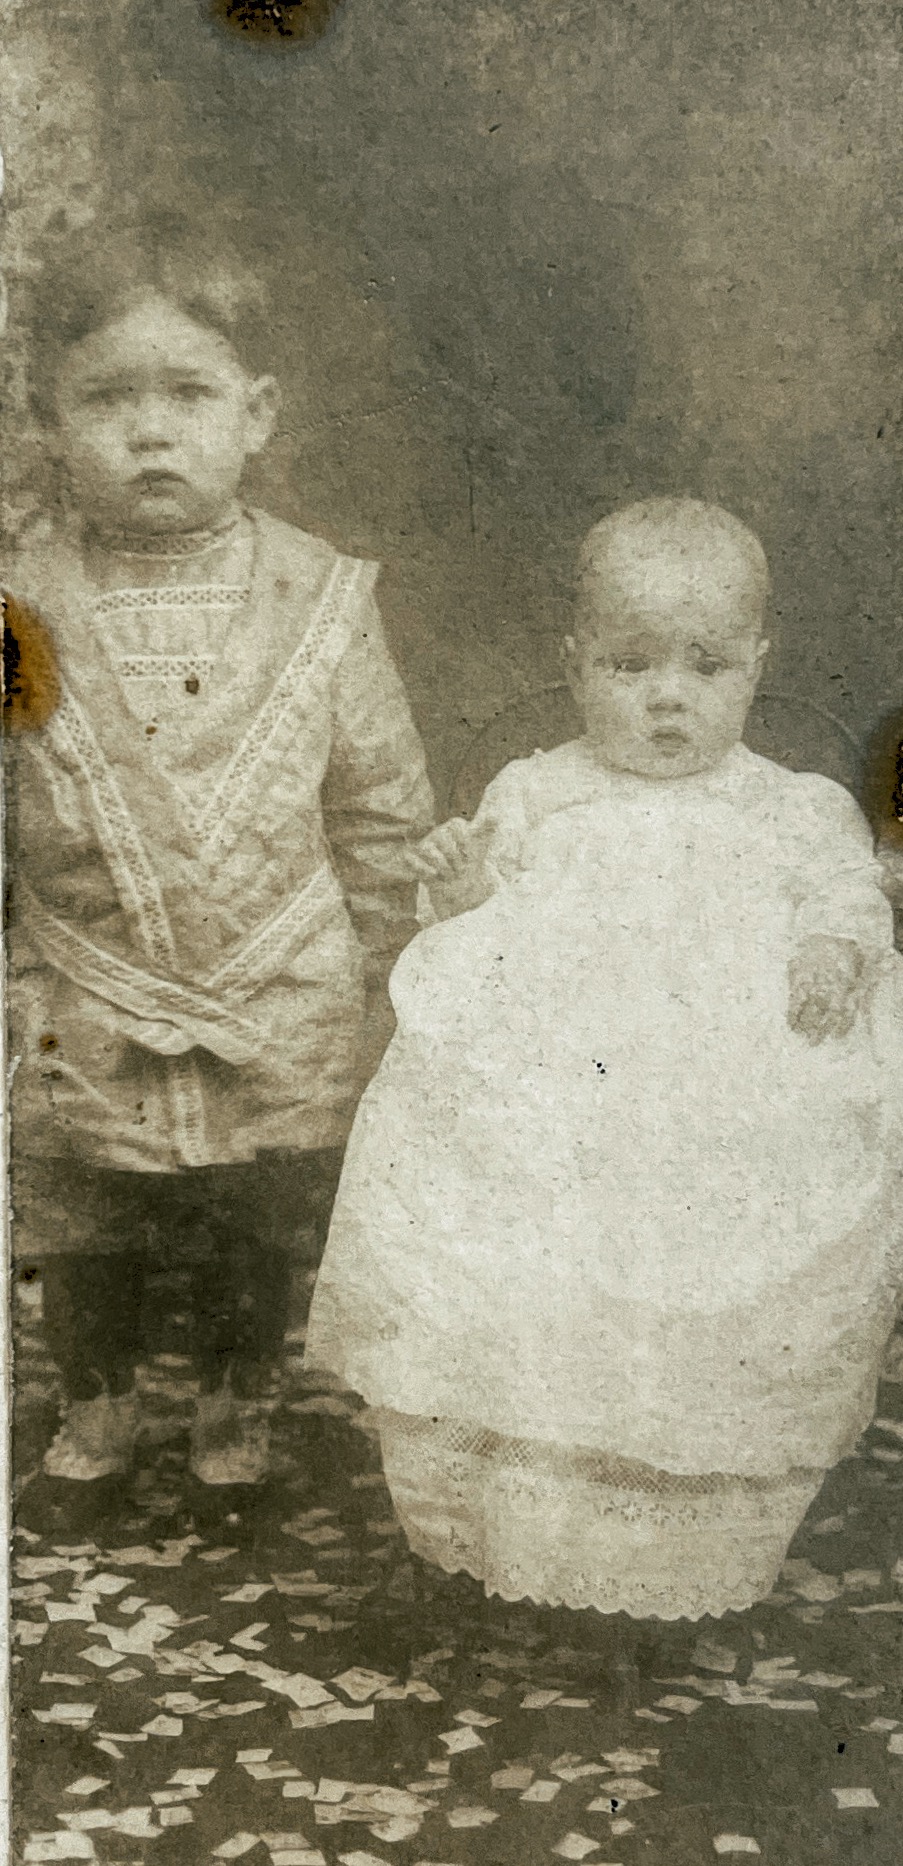 John Jr & Harry Grabowske…circa 1912